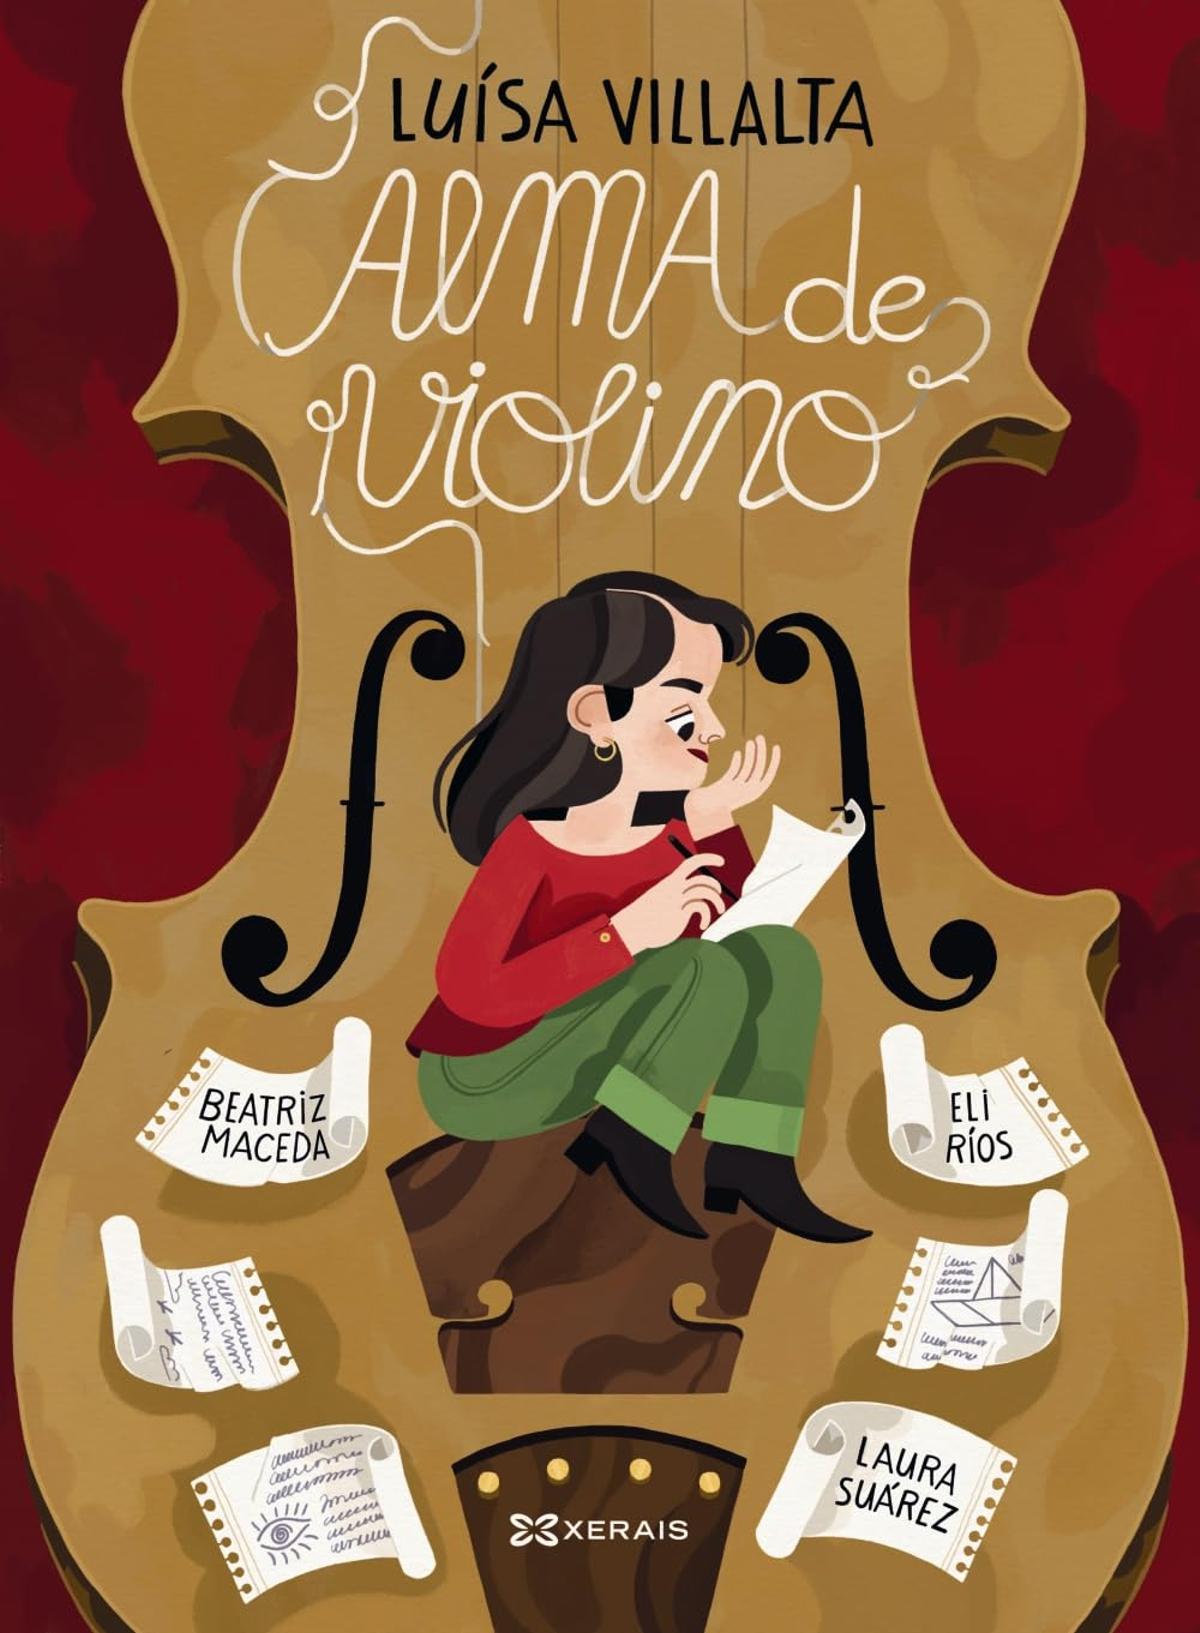 Cartel del acto organizado por las Aulas de Formación Aberta de Vigo